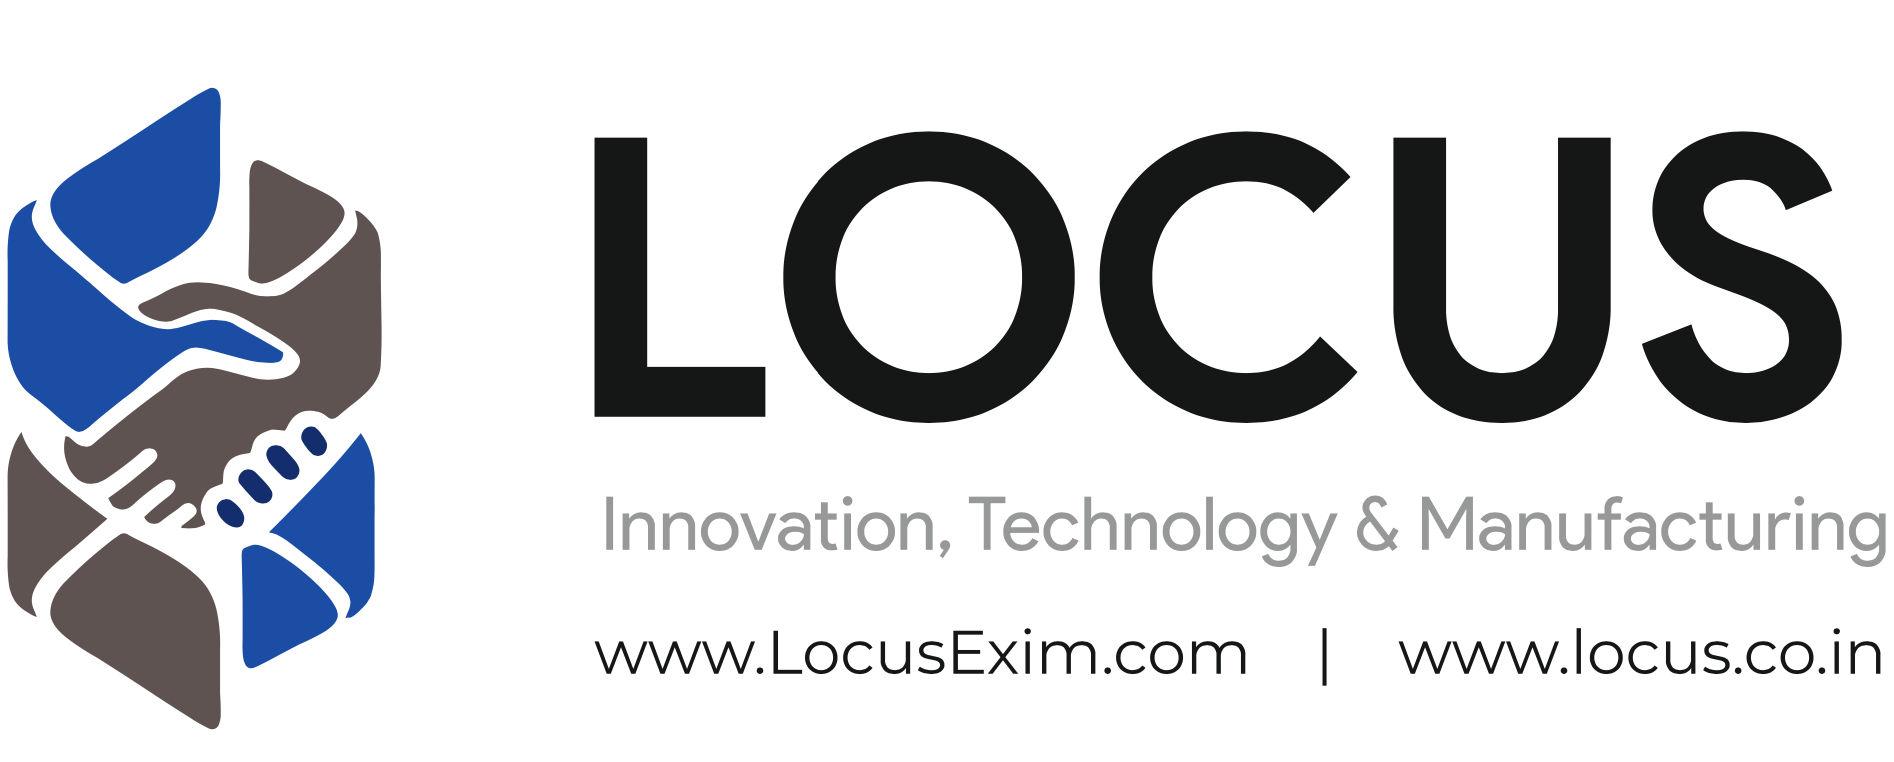 LOCUS EXIM